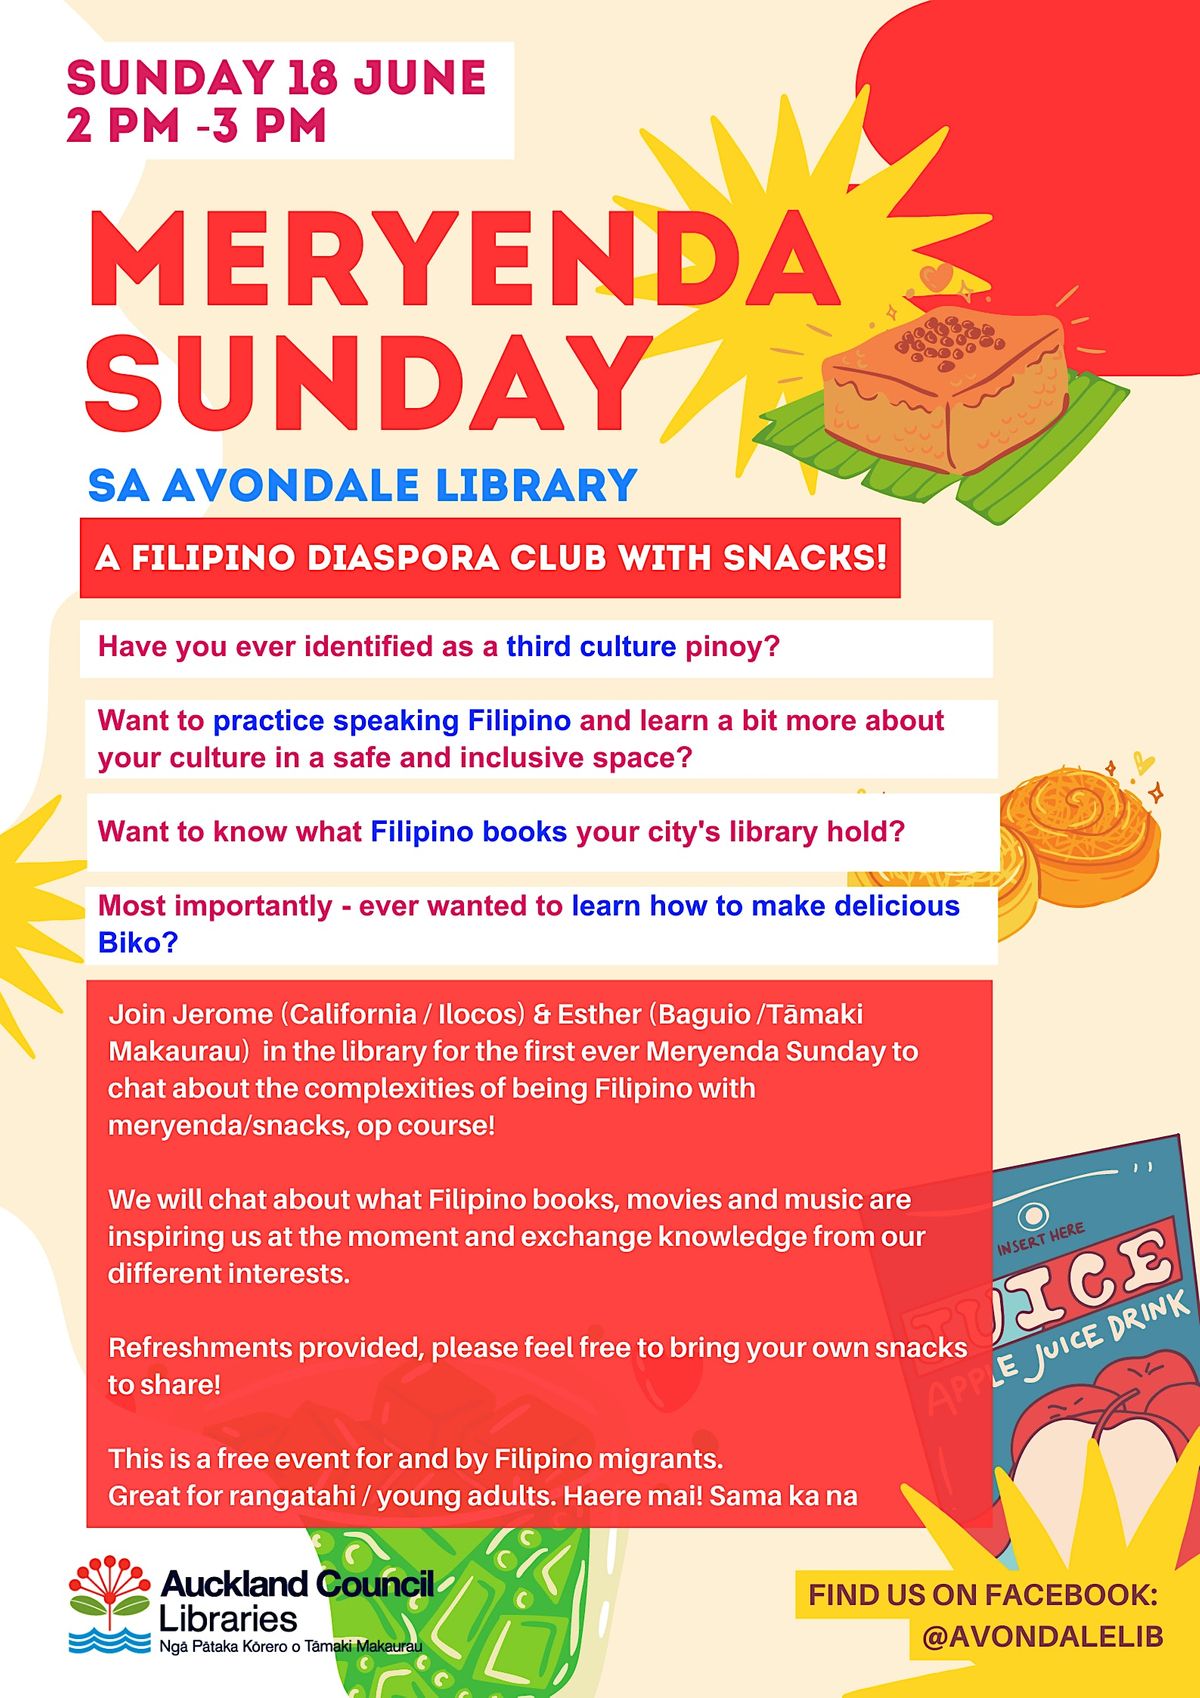 MERYENDA SUNDAY - Filipino Diaspora Snack Club